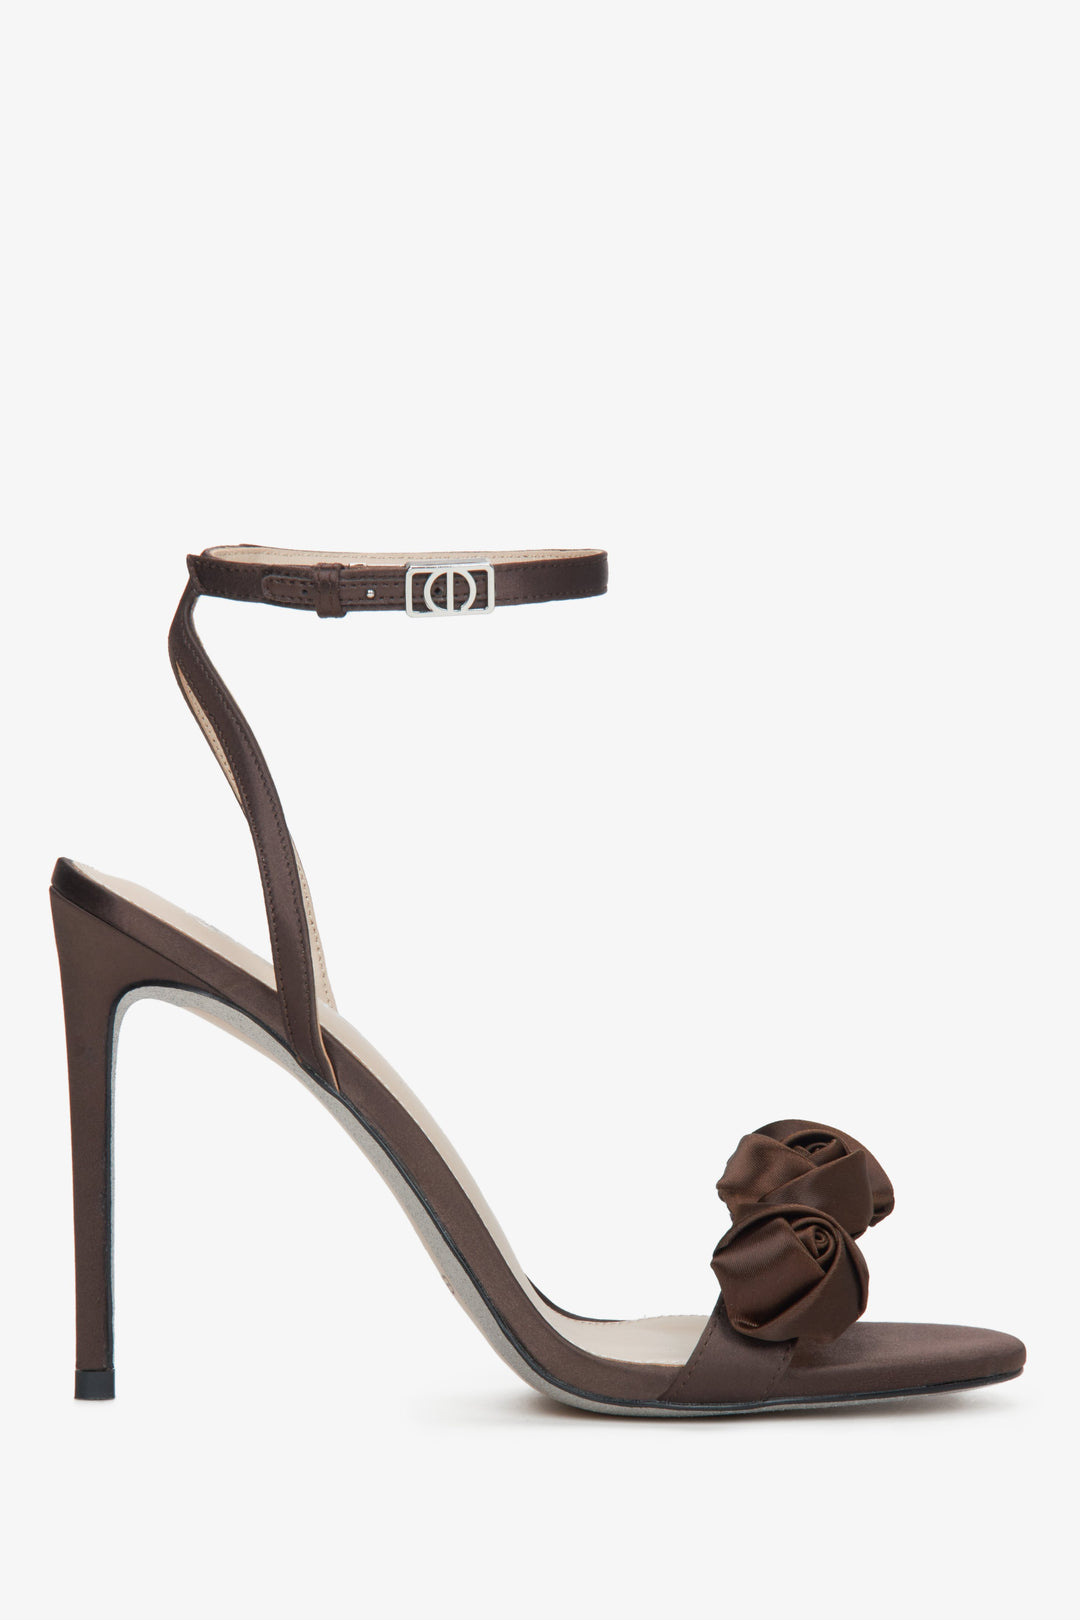 Women's Dark Brown Stiletto Heels Sandals with Satin Finish and Floral Details Estro ER00114742.